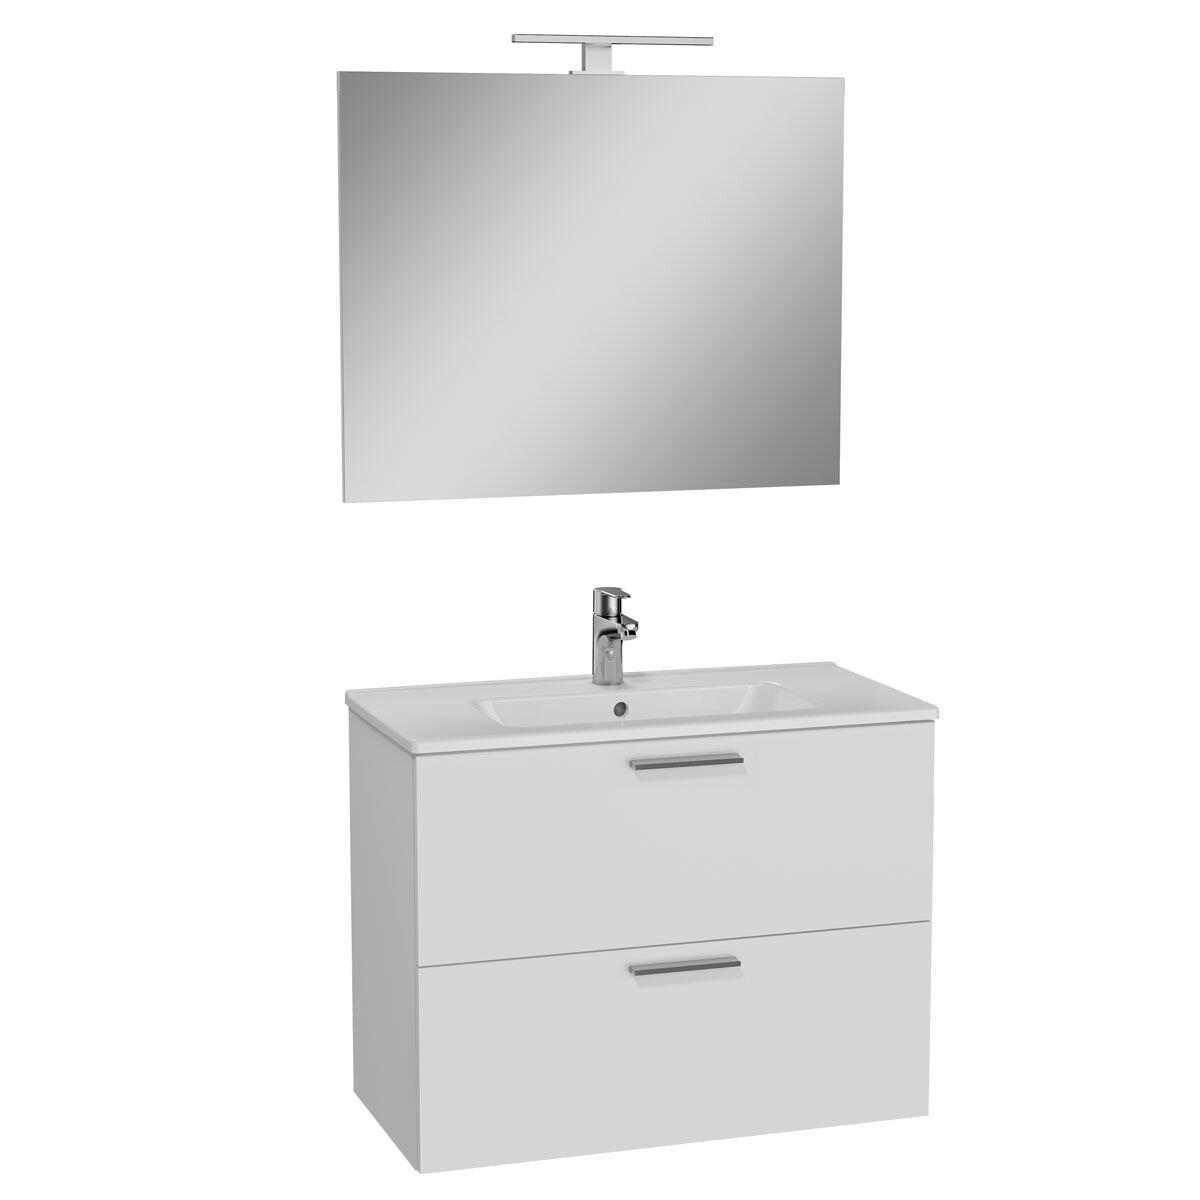 75024-Vitra Mia Aynalı Aydınlatmalı Dolap Seti - 2 Çekmeceli 80 cm - Parlak Beyaz